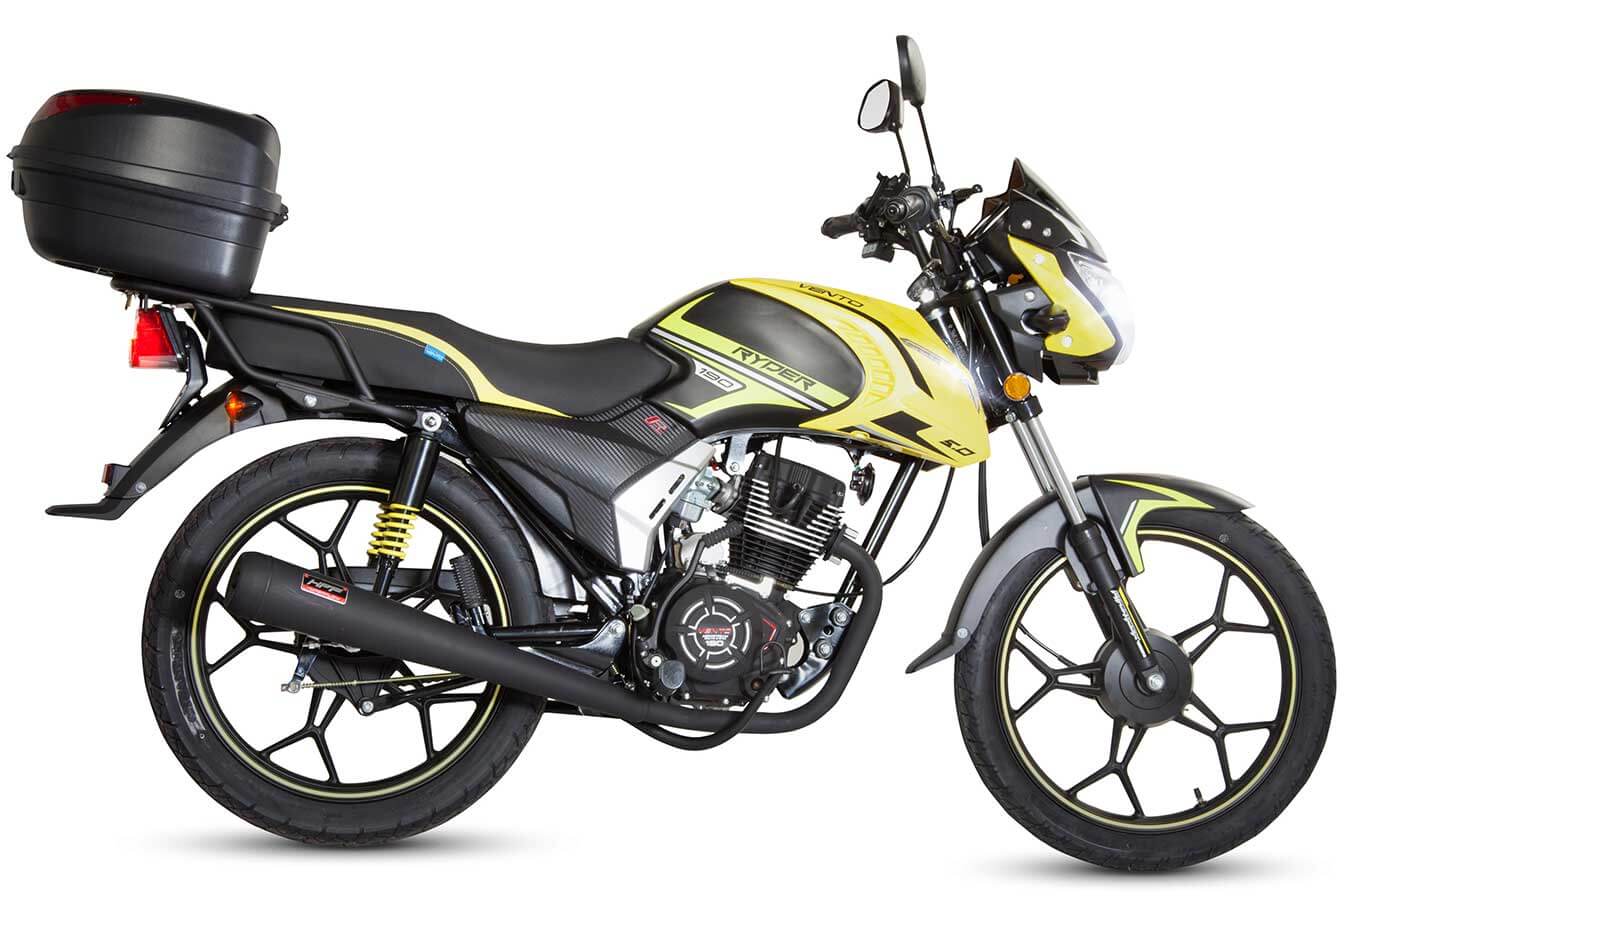 Motocicleta Vento Screamer Sportivo con 10 mil pesos de descuento en Coppel  y casco incluido